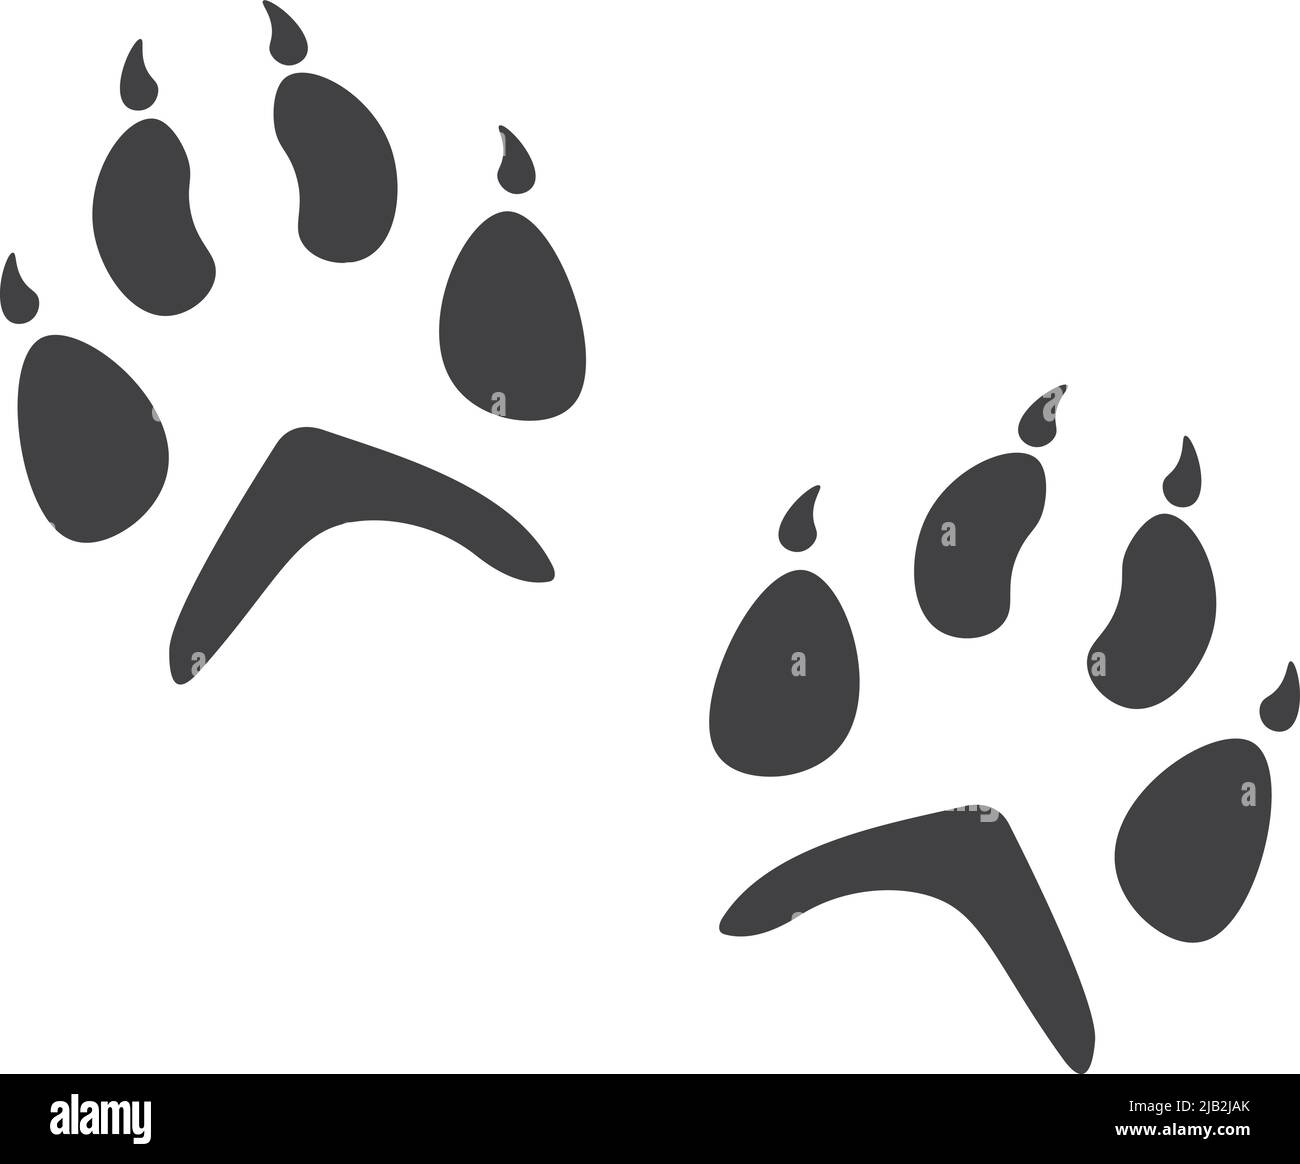 Coppia di zampe volpe. Contrassegno nero del piede animale Illustrazione Vettoriale